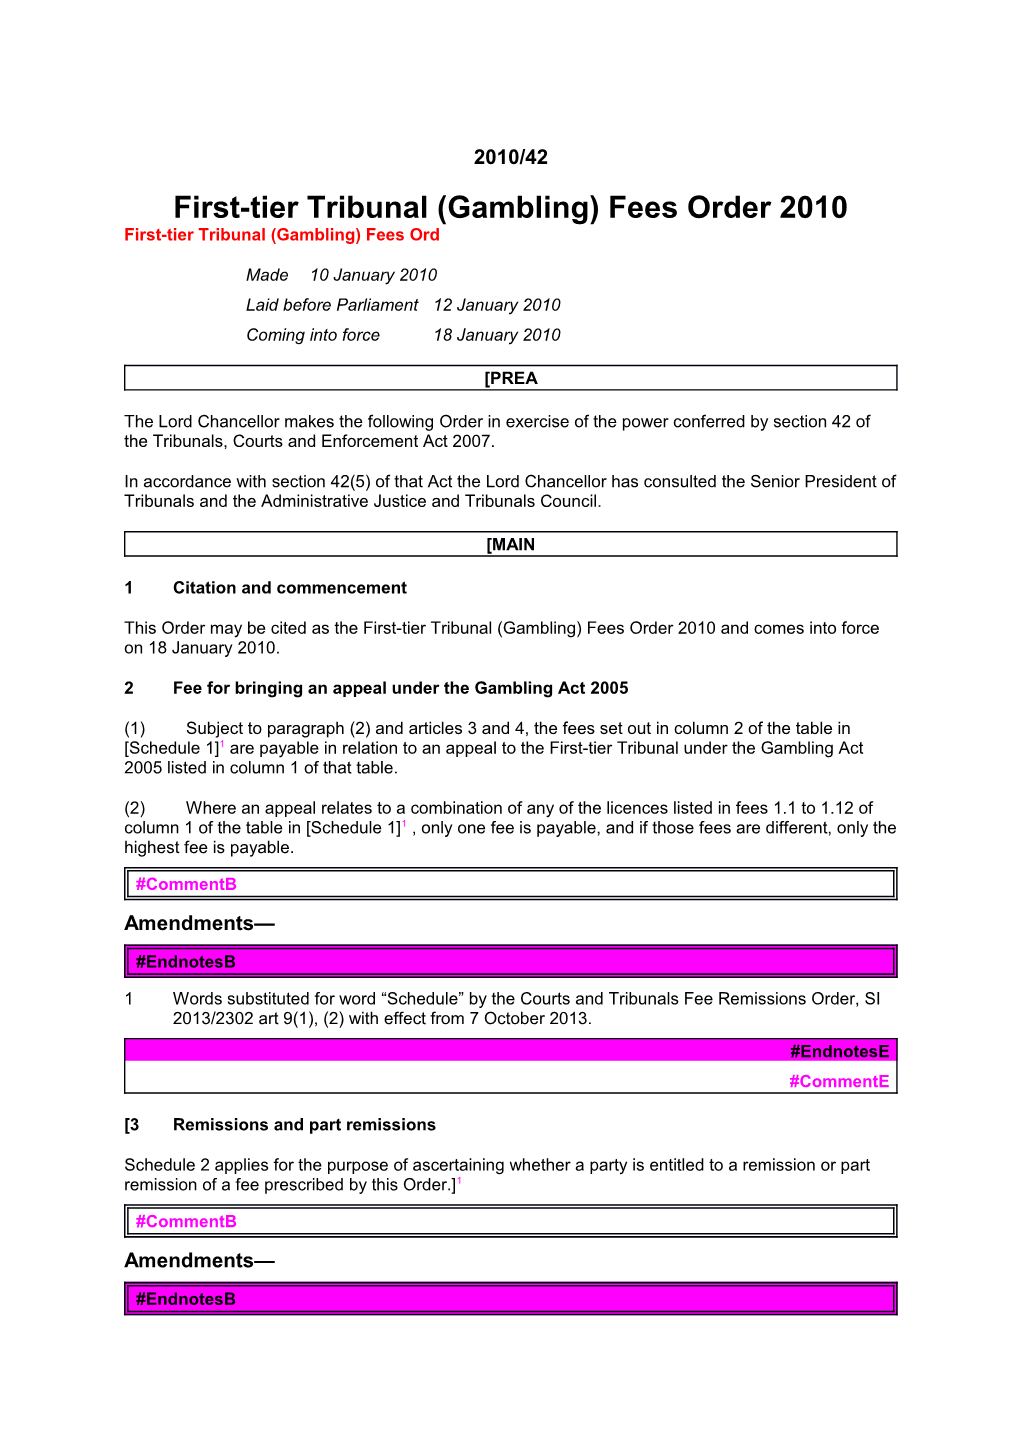 First-Tier Tribunal (Gambling) Fees Order 2010